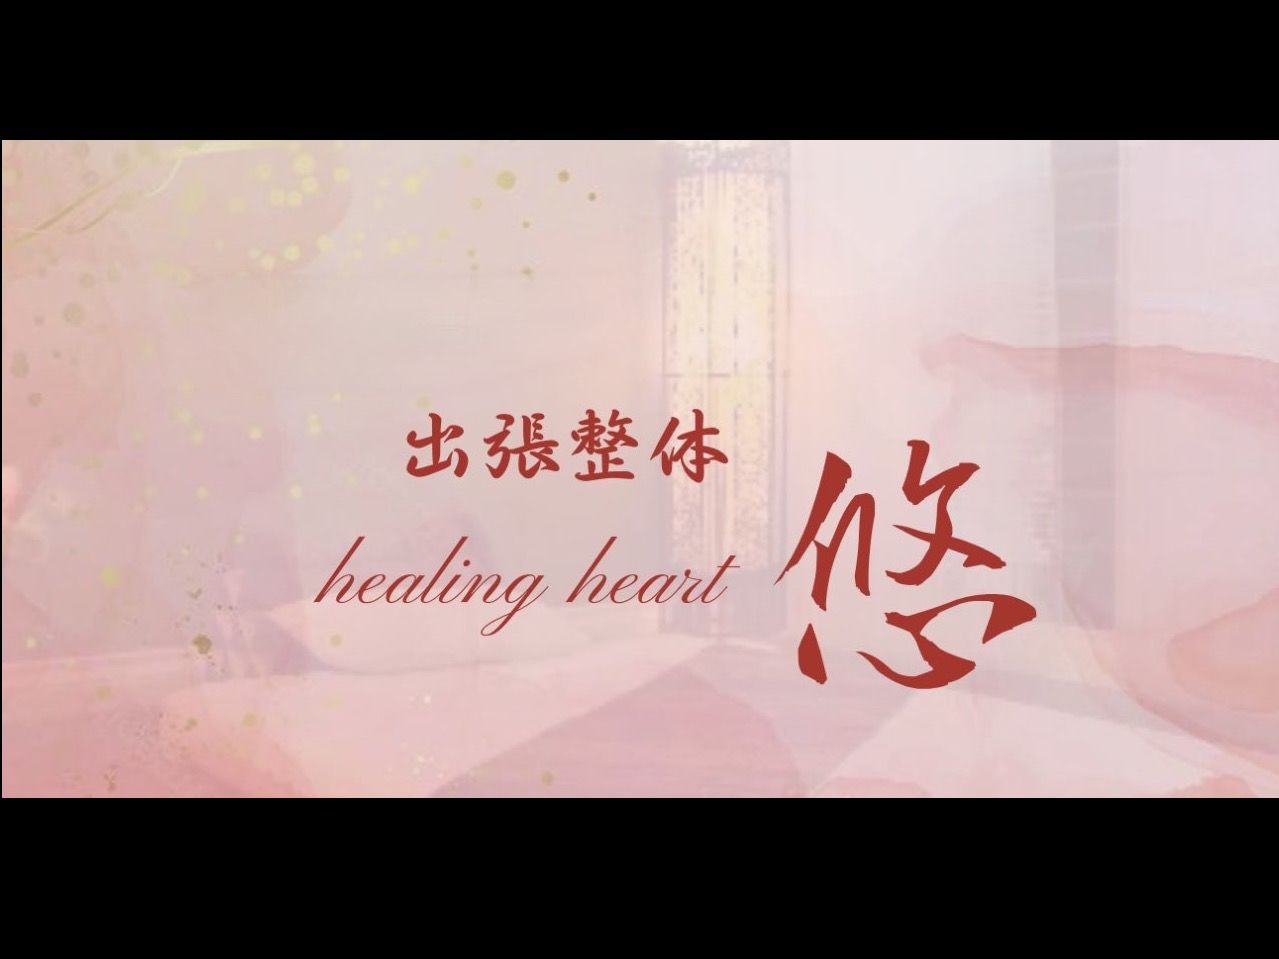 出張整体 healing heart 悠のメイン画像